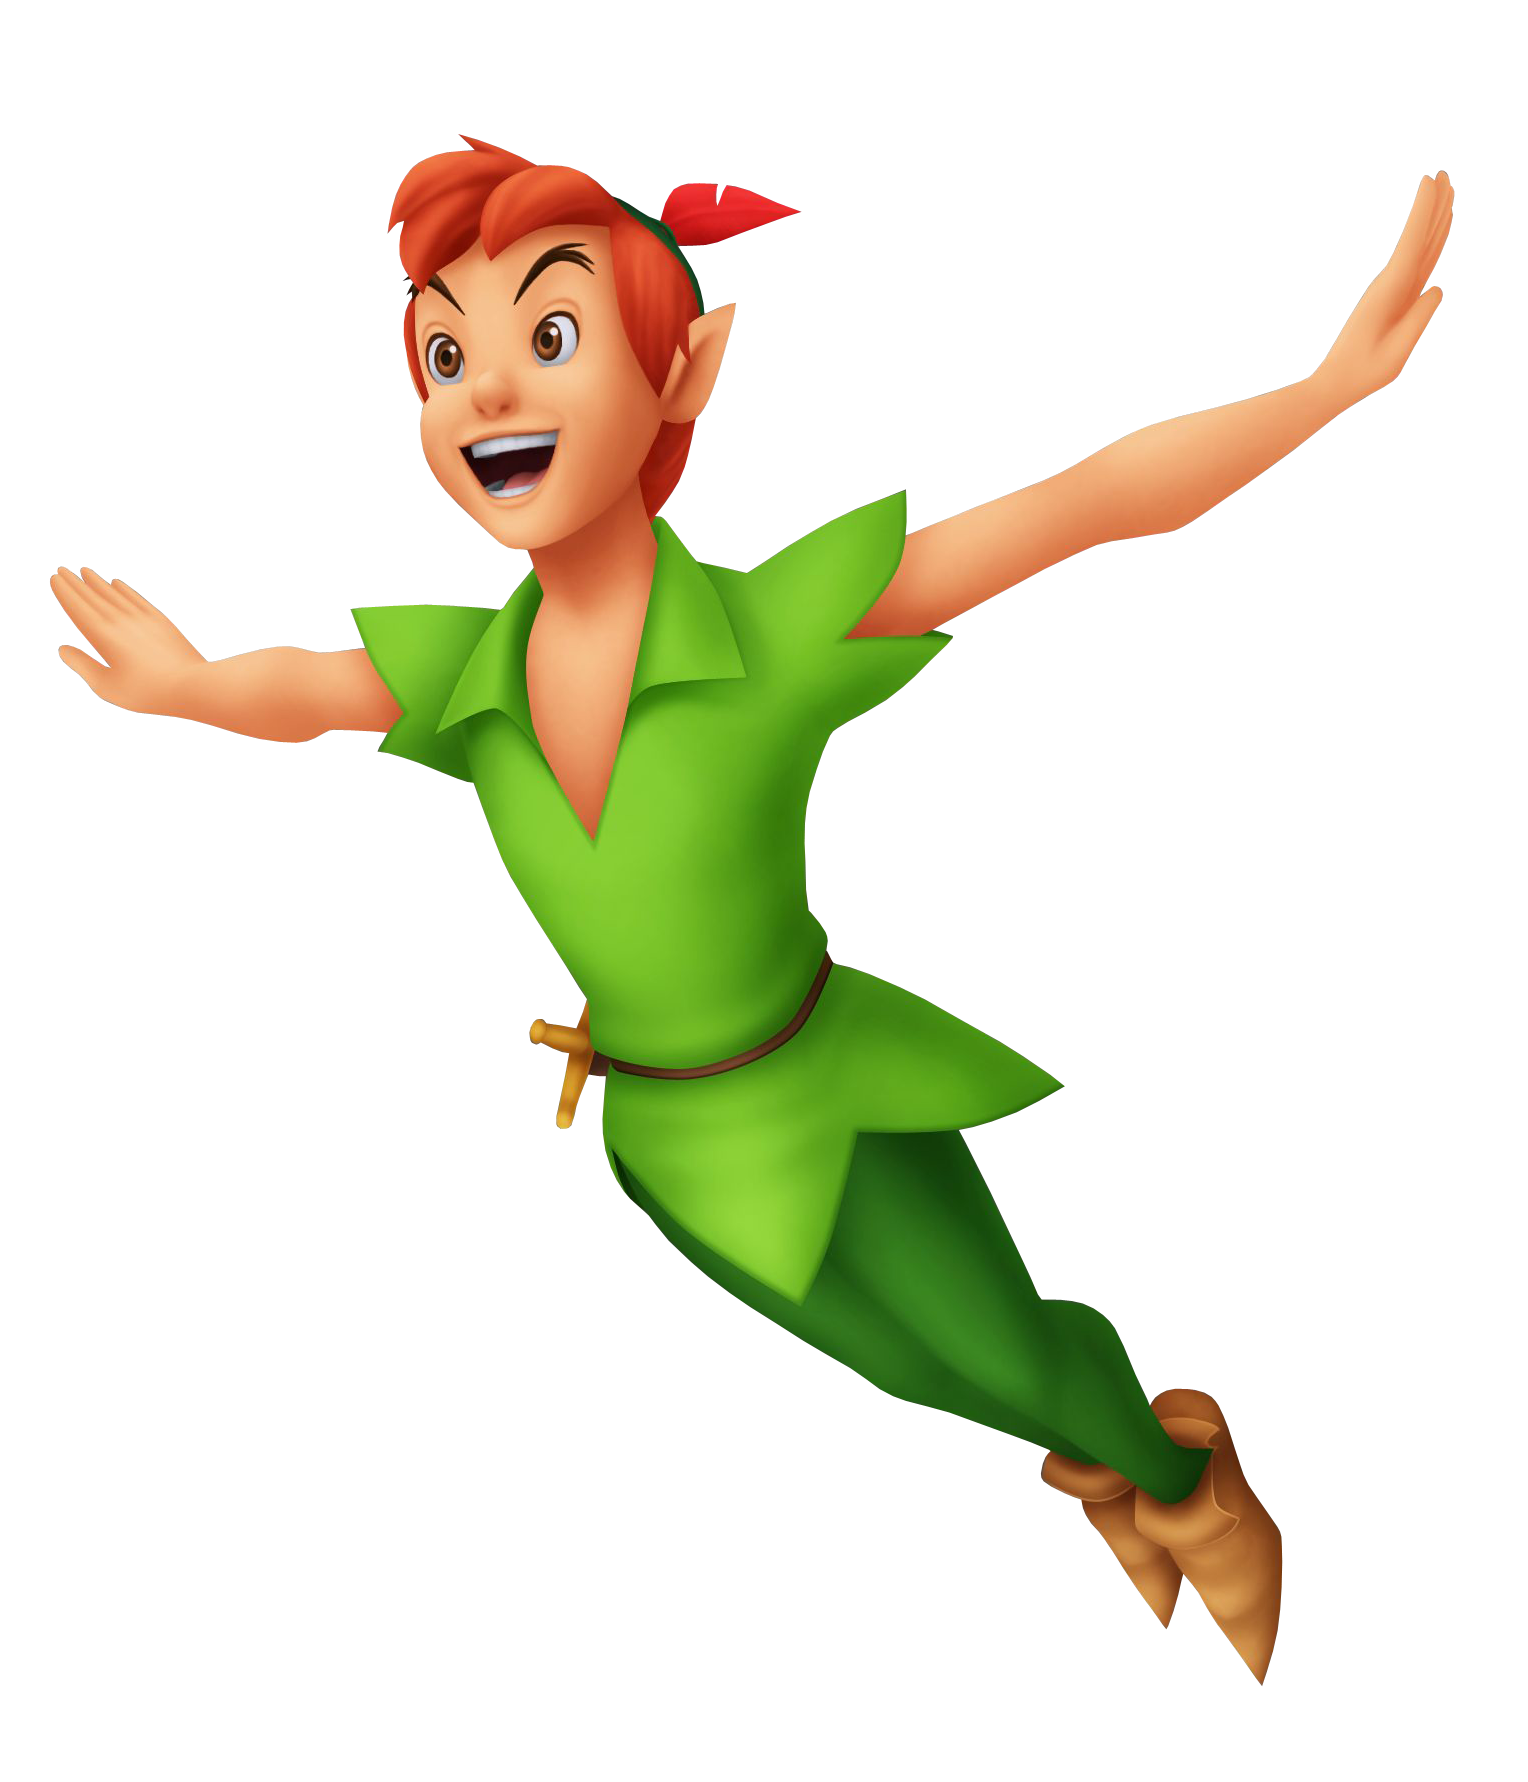 Peter Pan #3